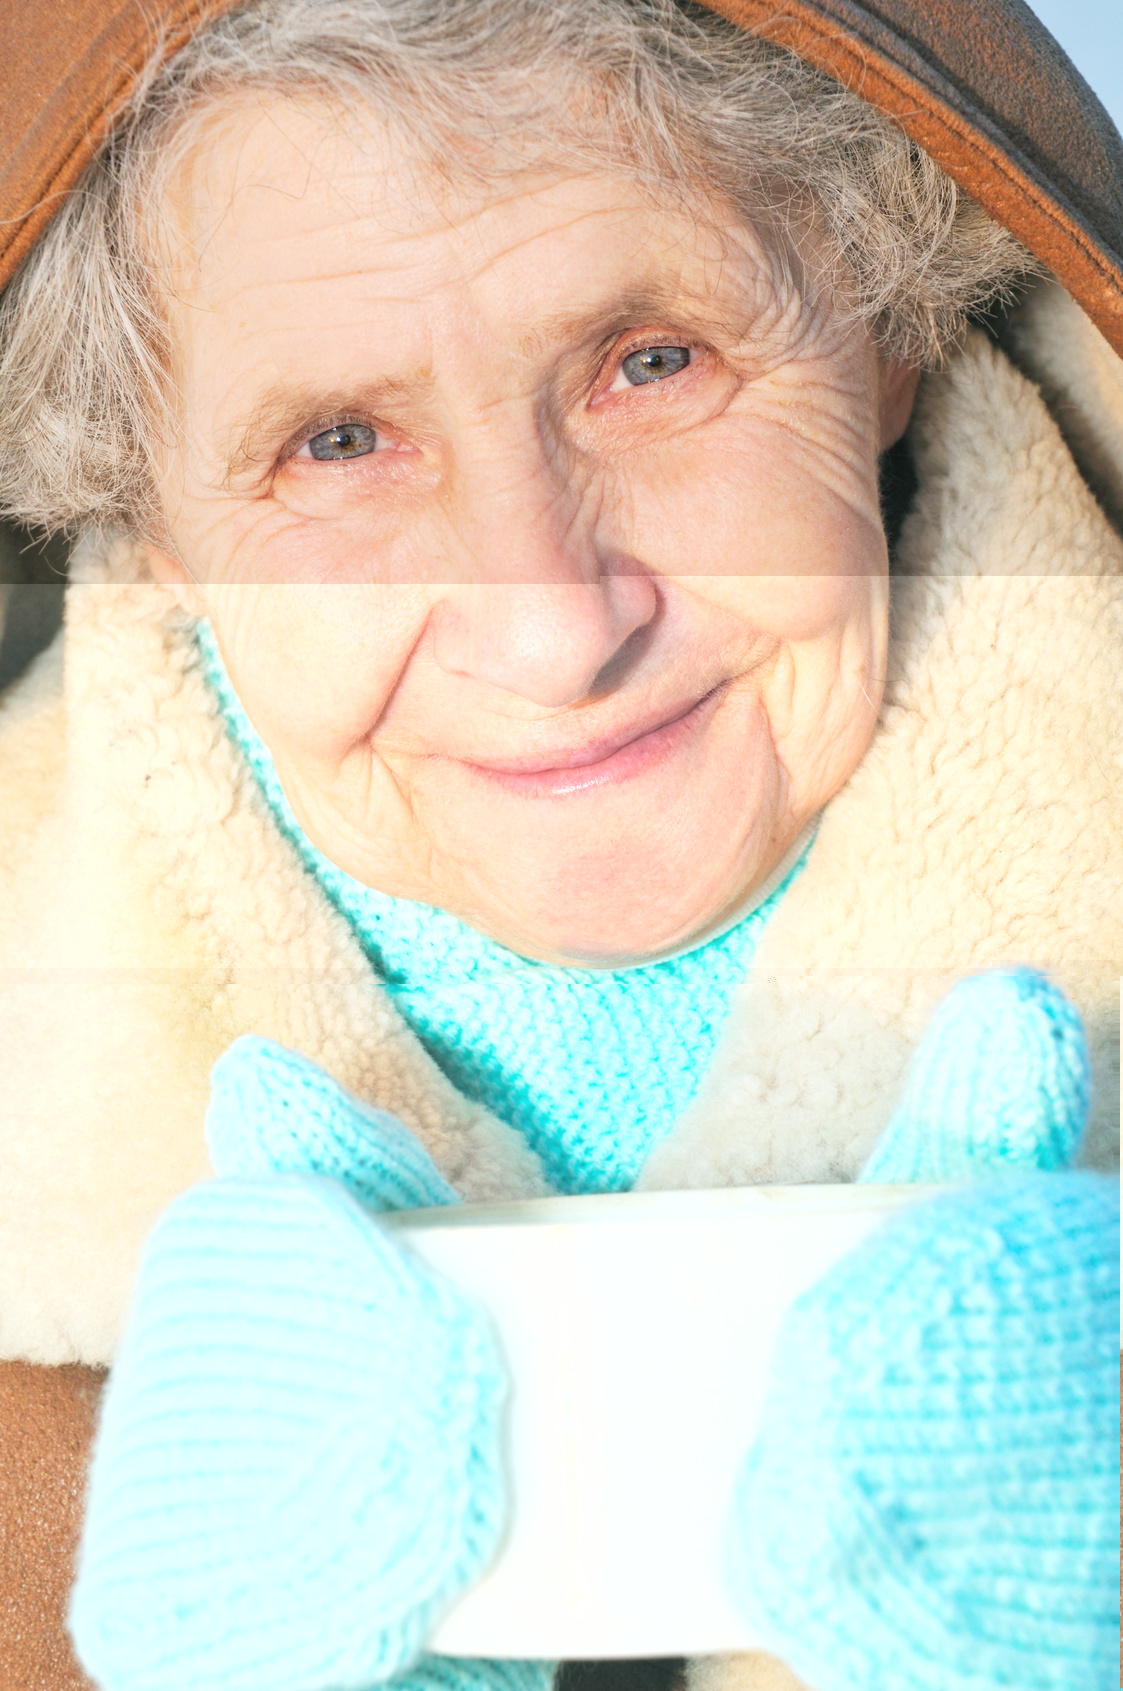 البرودة.. خطر على كبار السن المصابين بالربو